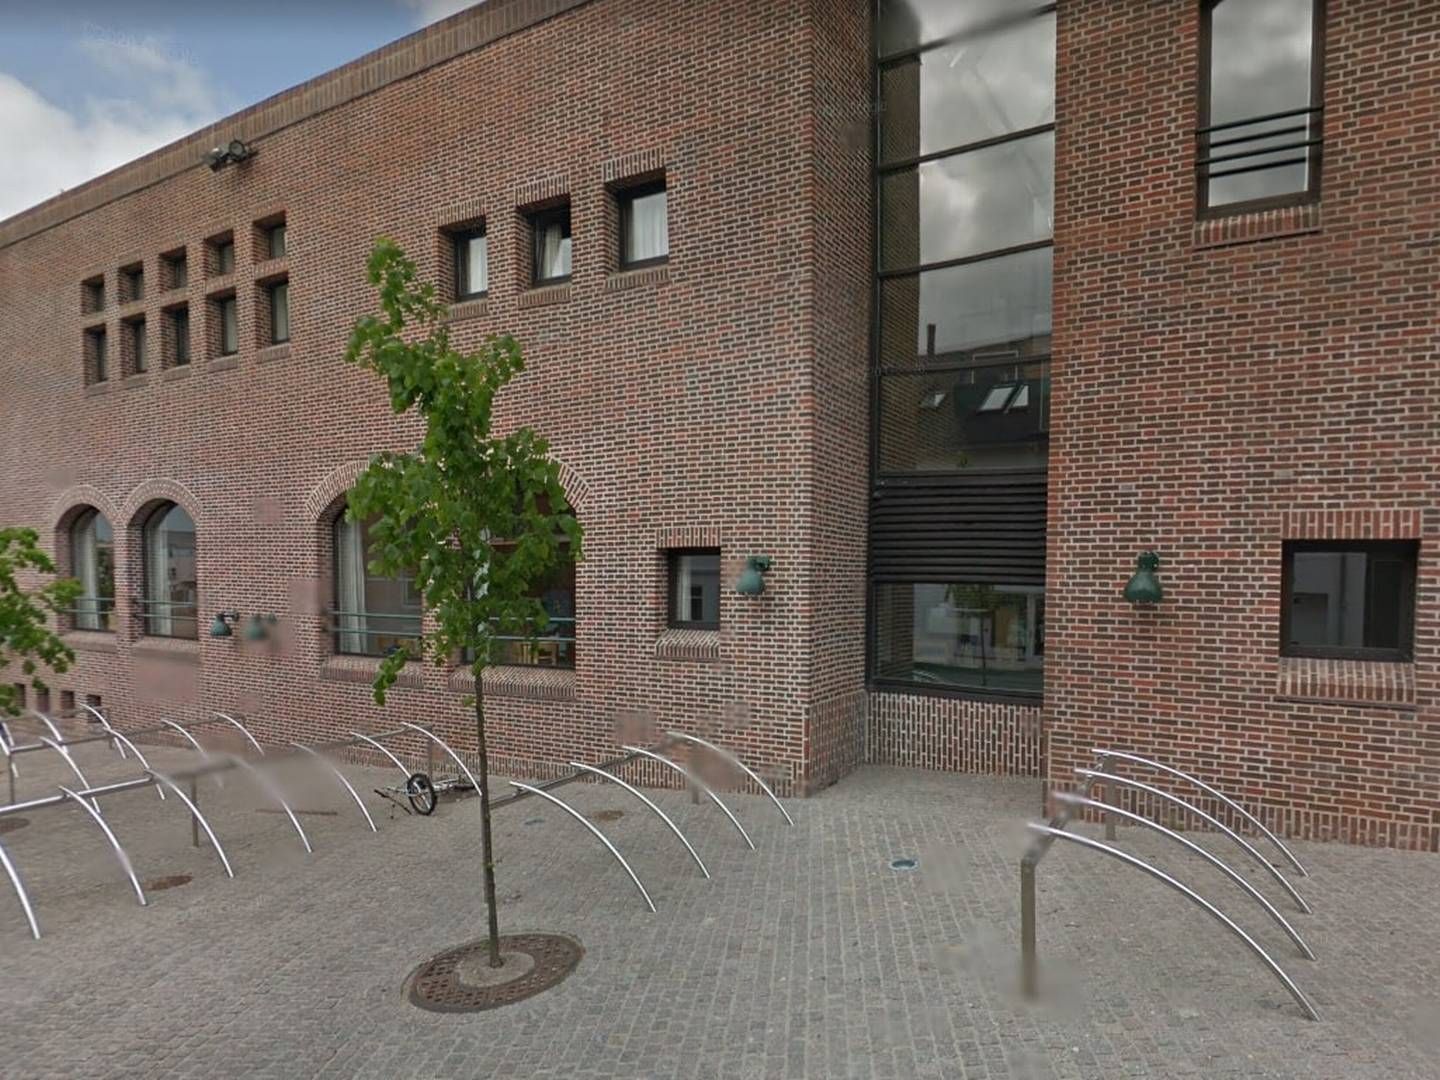 Holstebro Kommune ansætter jurist i stillingen som ny borgerrådgiver, der skal være bindeled mellem borgere og forvaltningen. | Foto: Google Maps